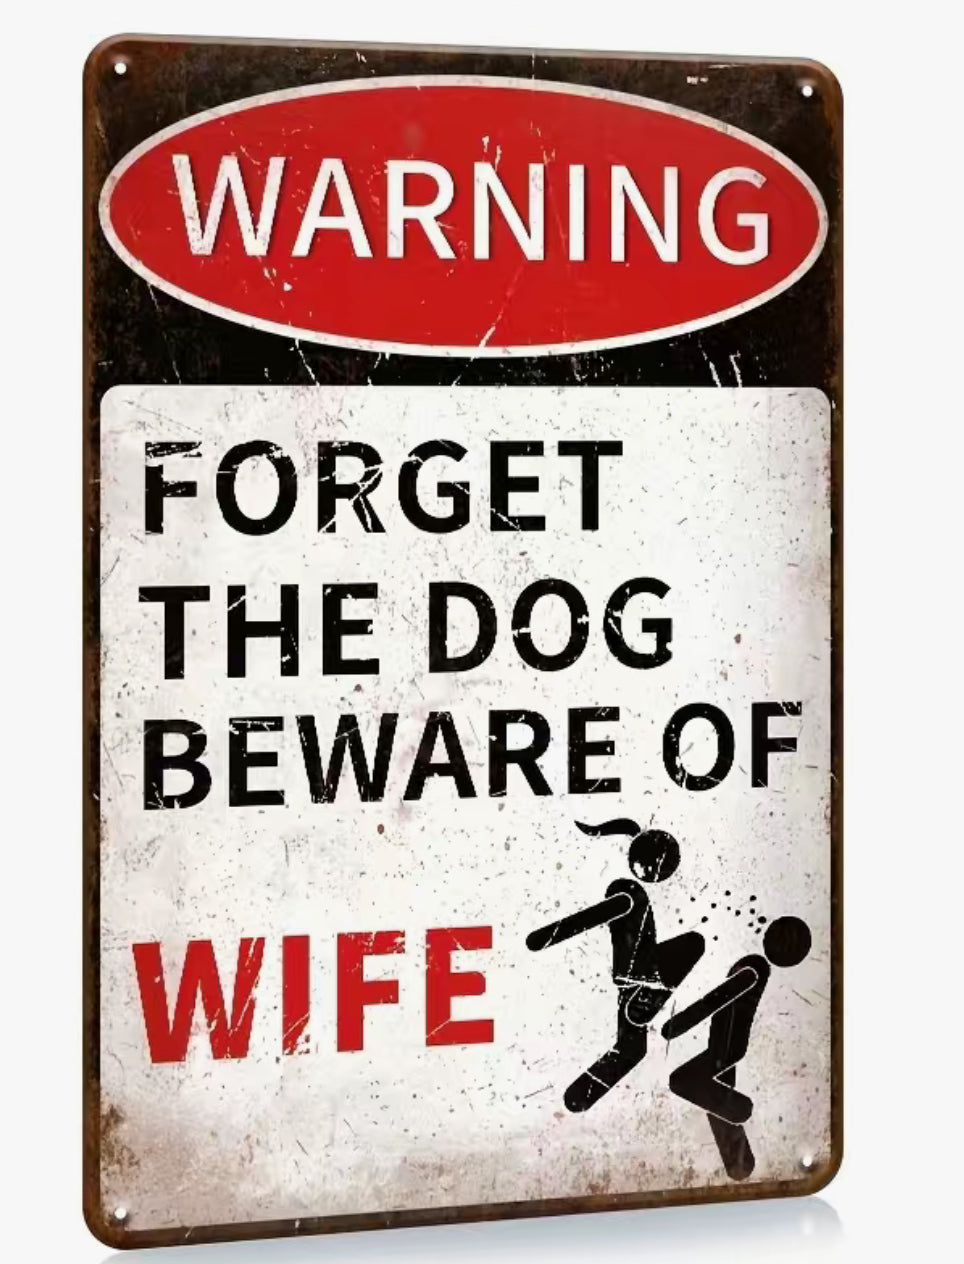 Beware of Wife